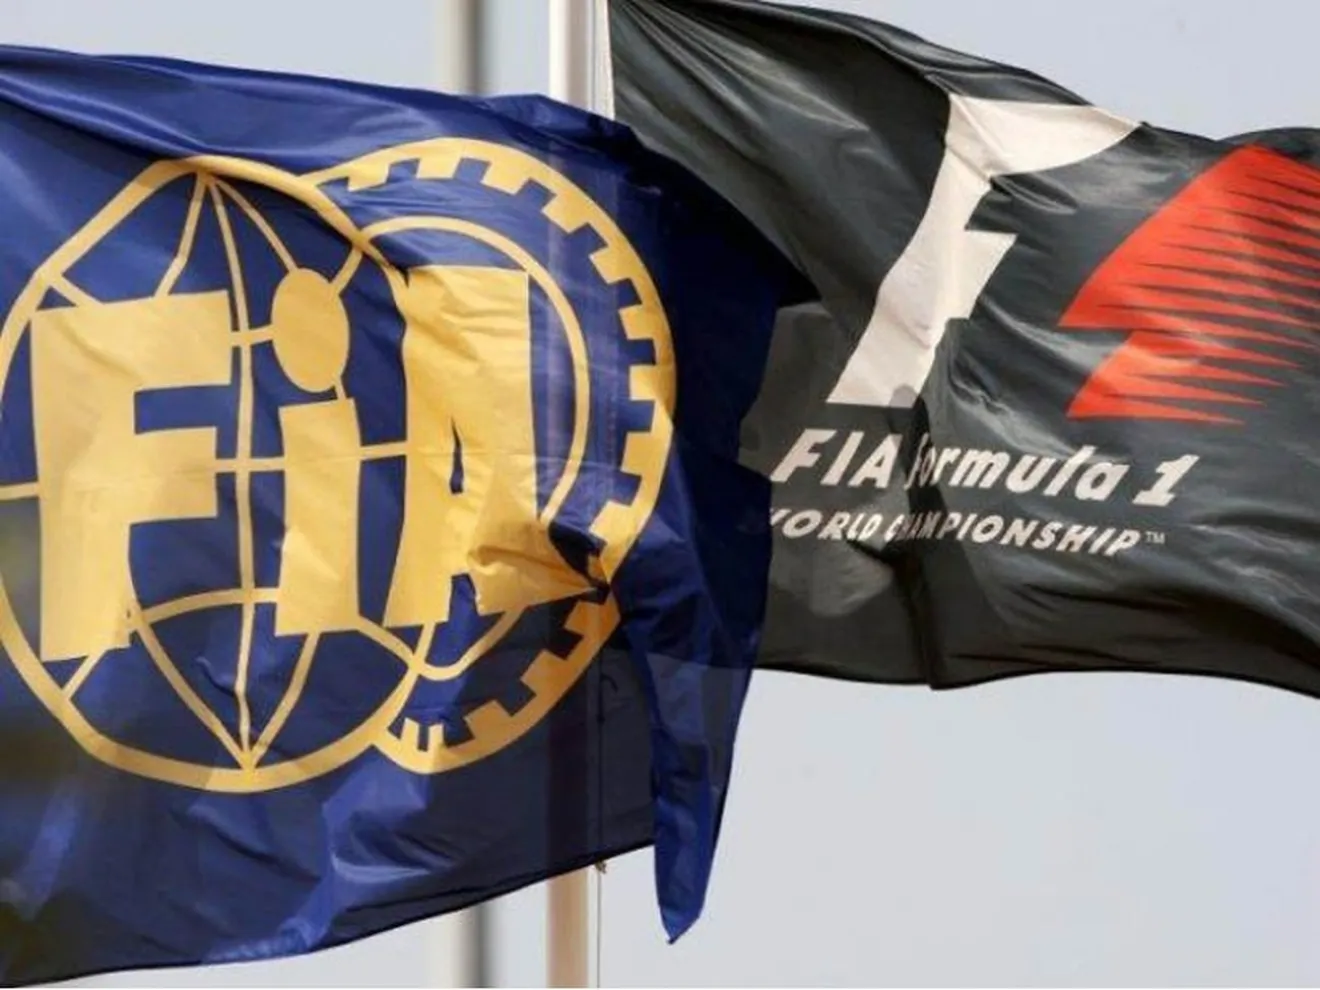 La FIA publica oficialmente el Reglamento técnico y deportivo para este año